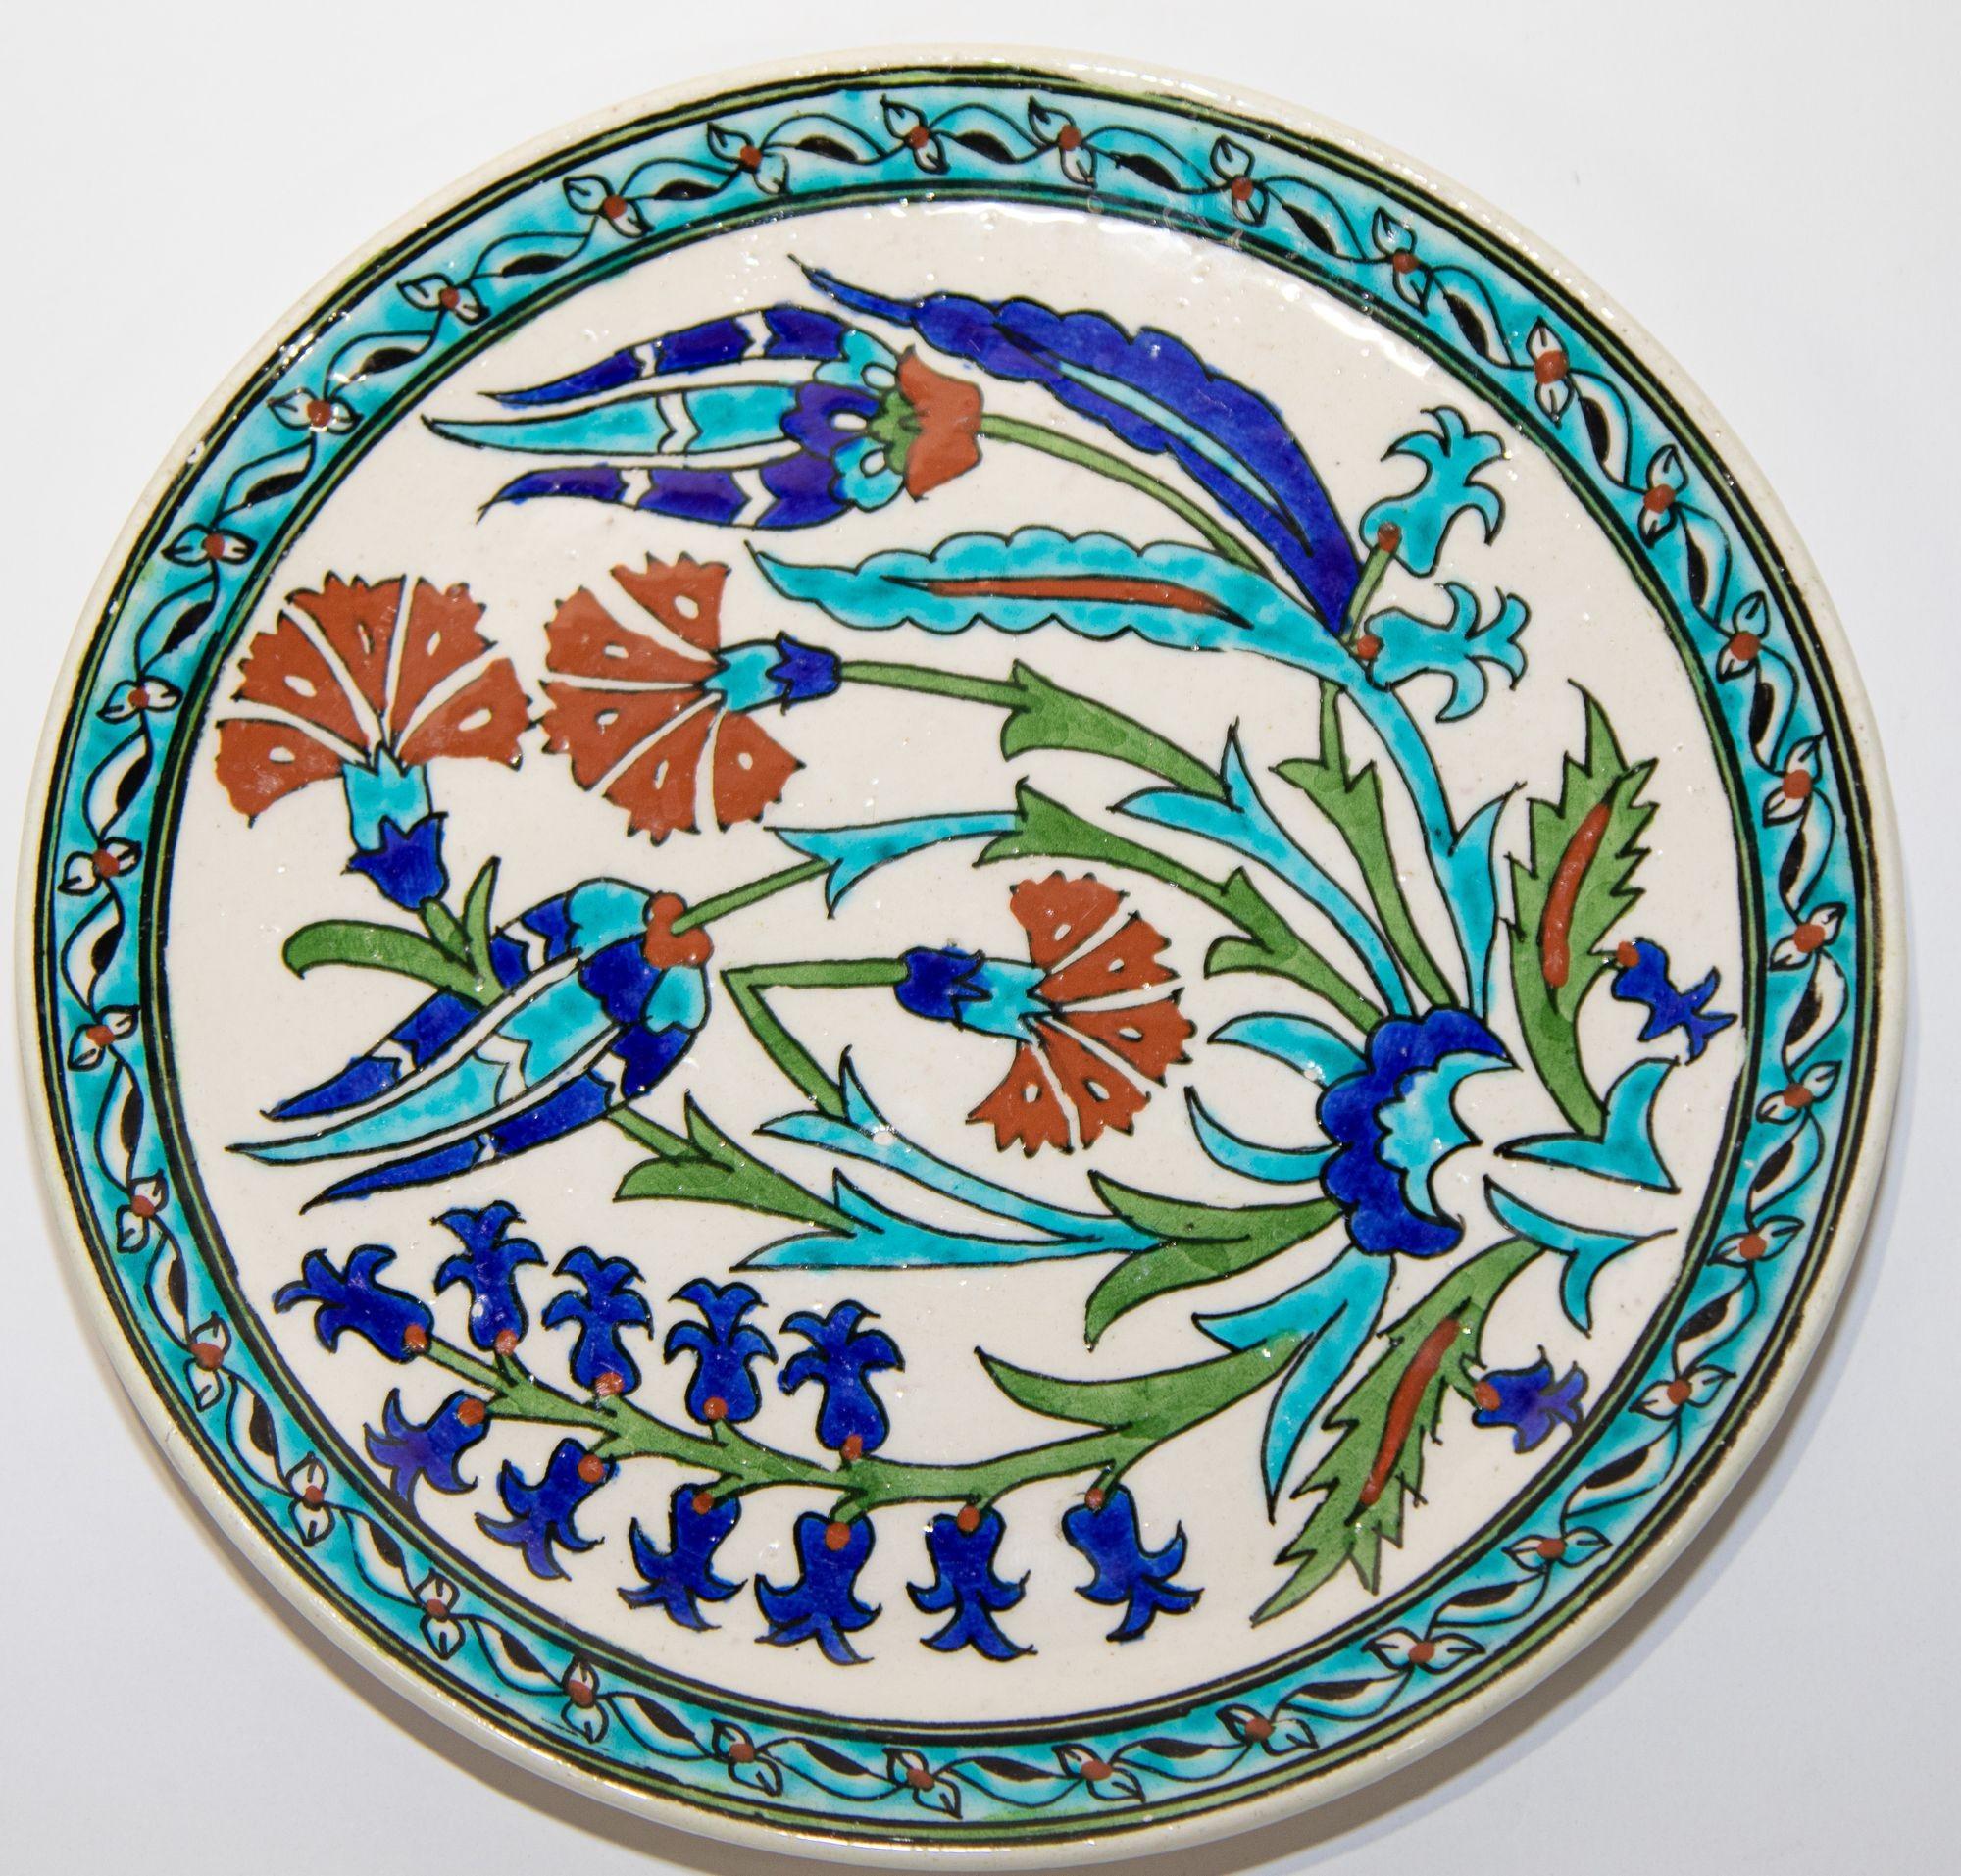 Türkische polychrome handbemalte Keramik Kutahya dekorative hängen Teller.
Kütahya ist berühmt für seine glasierten und mehrfarbigen Ofenprodukte wie Fliesen und Töpferwaren.
Es hat eine wunderschön handgemalte Blumen in Burgund, Türkis, Hell- und